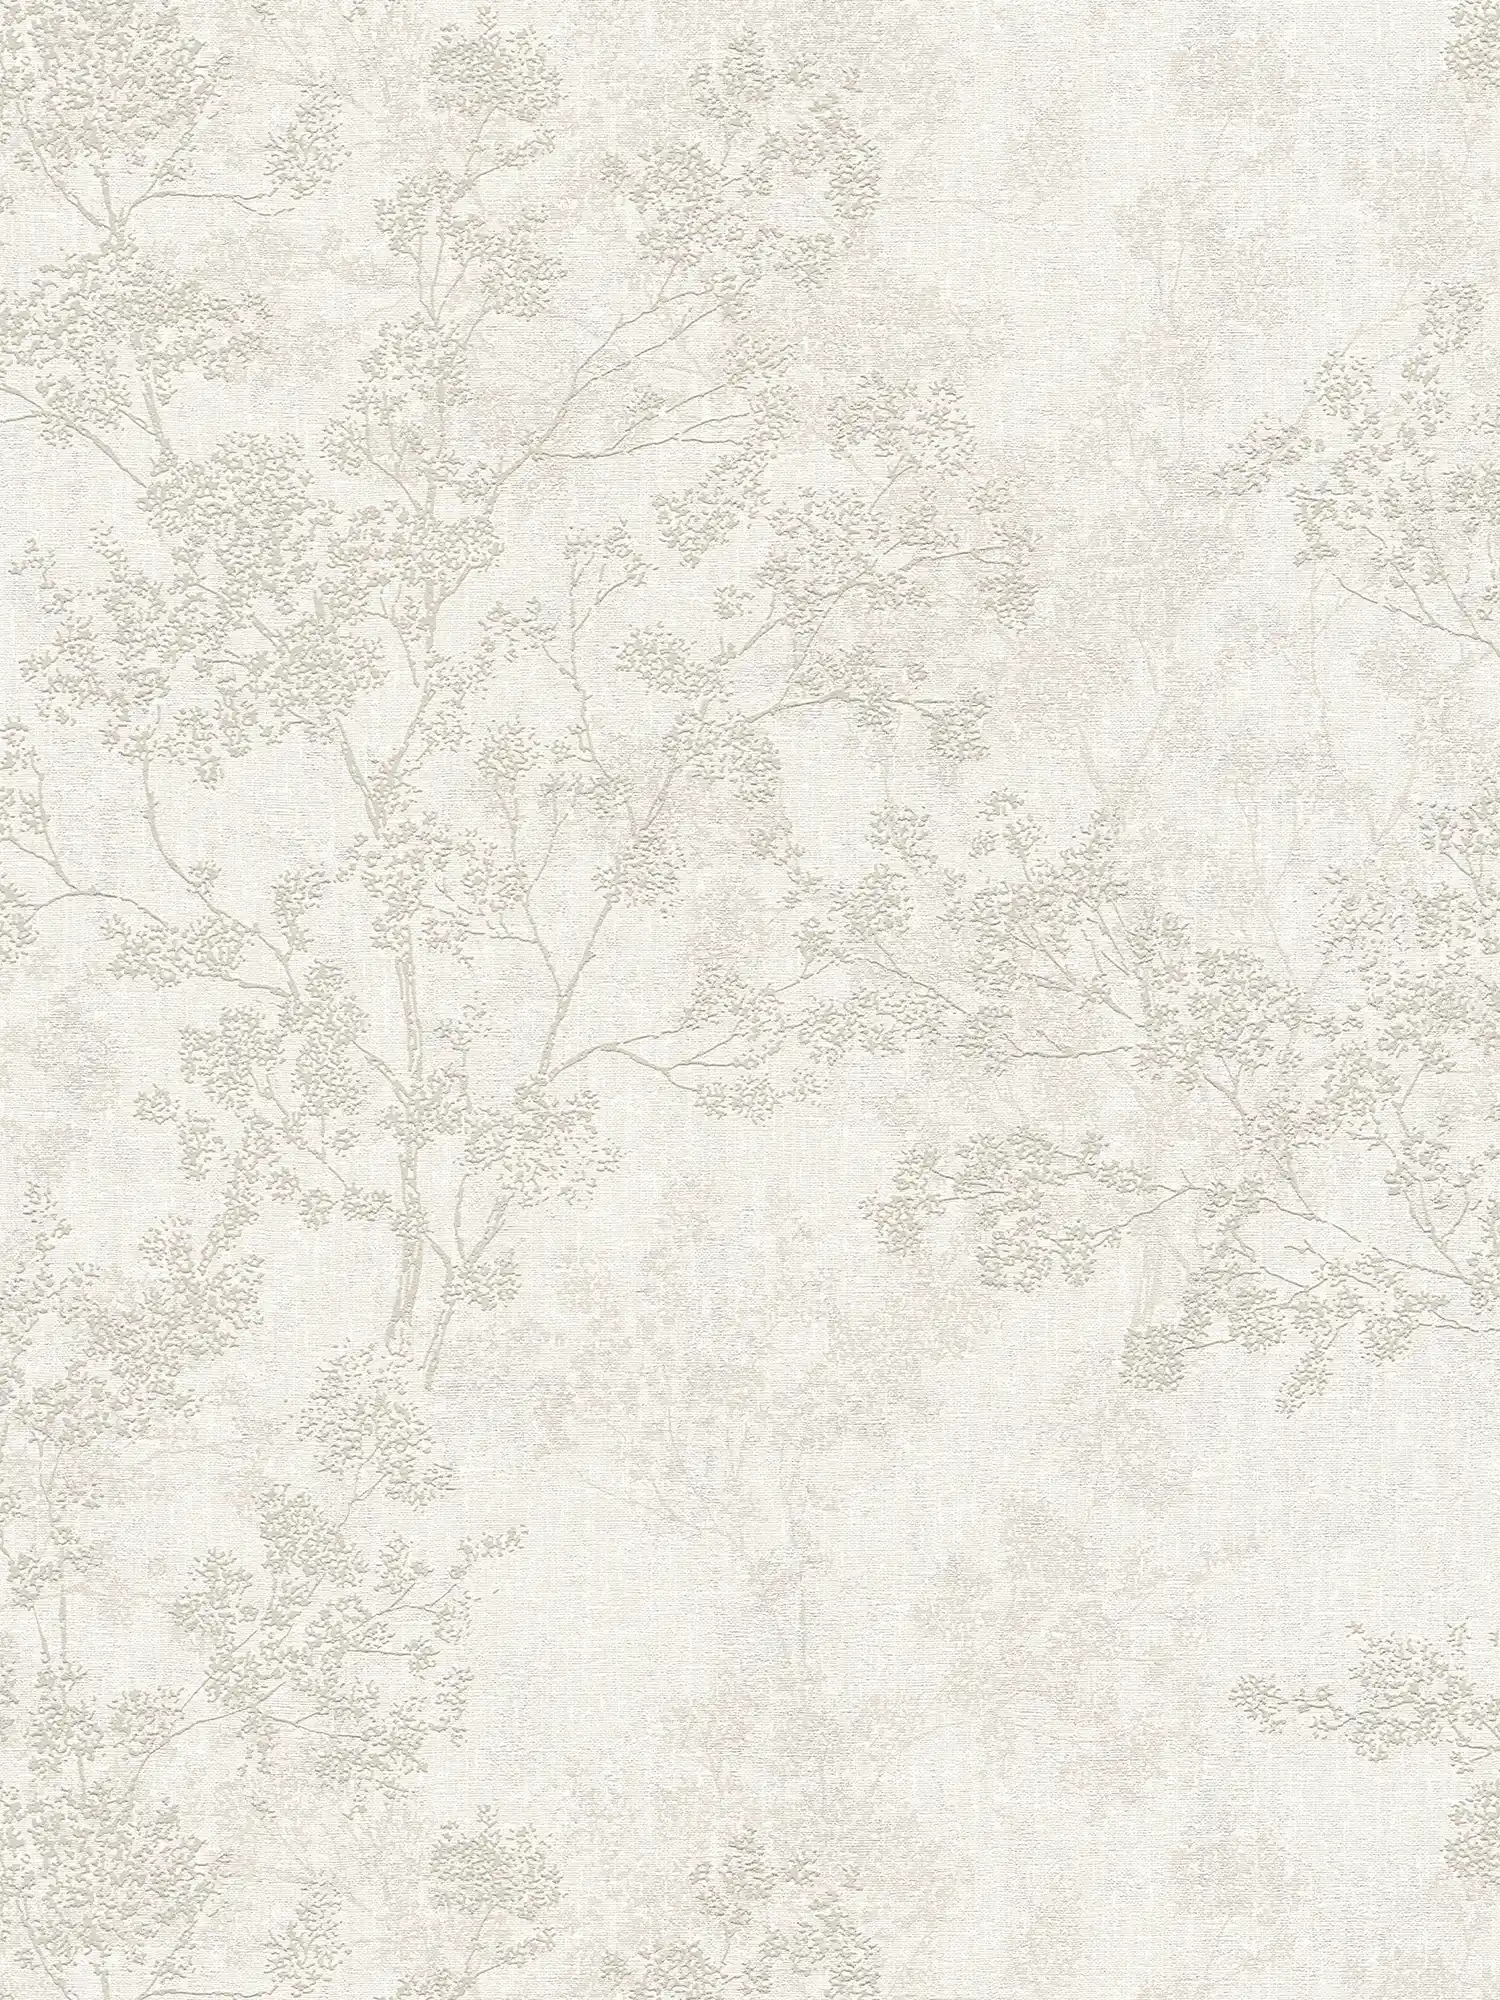 behang bladeren patroon in linnen look - beige, crème, grijs
